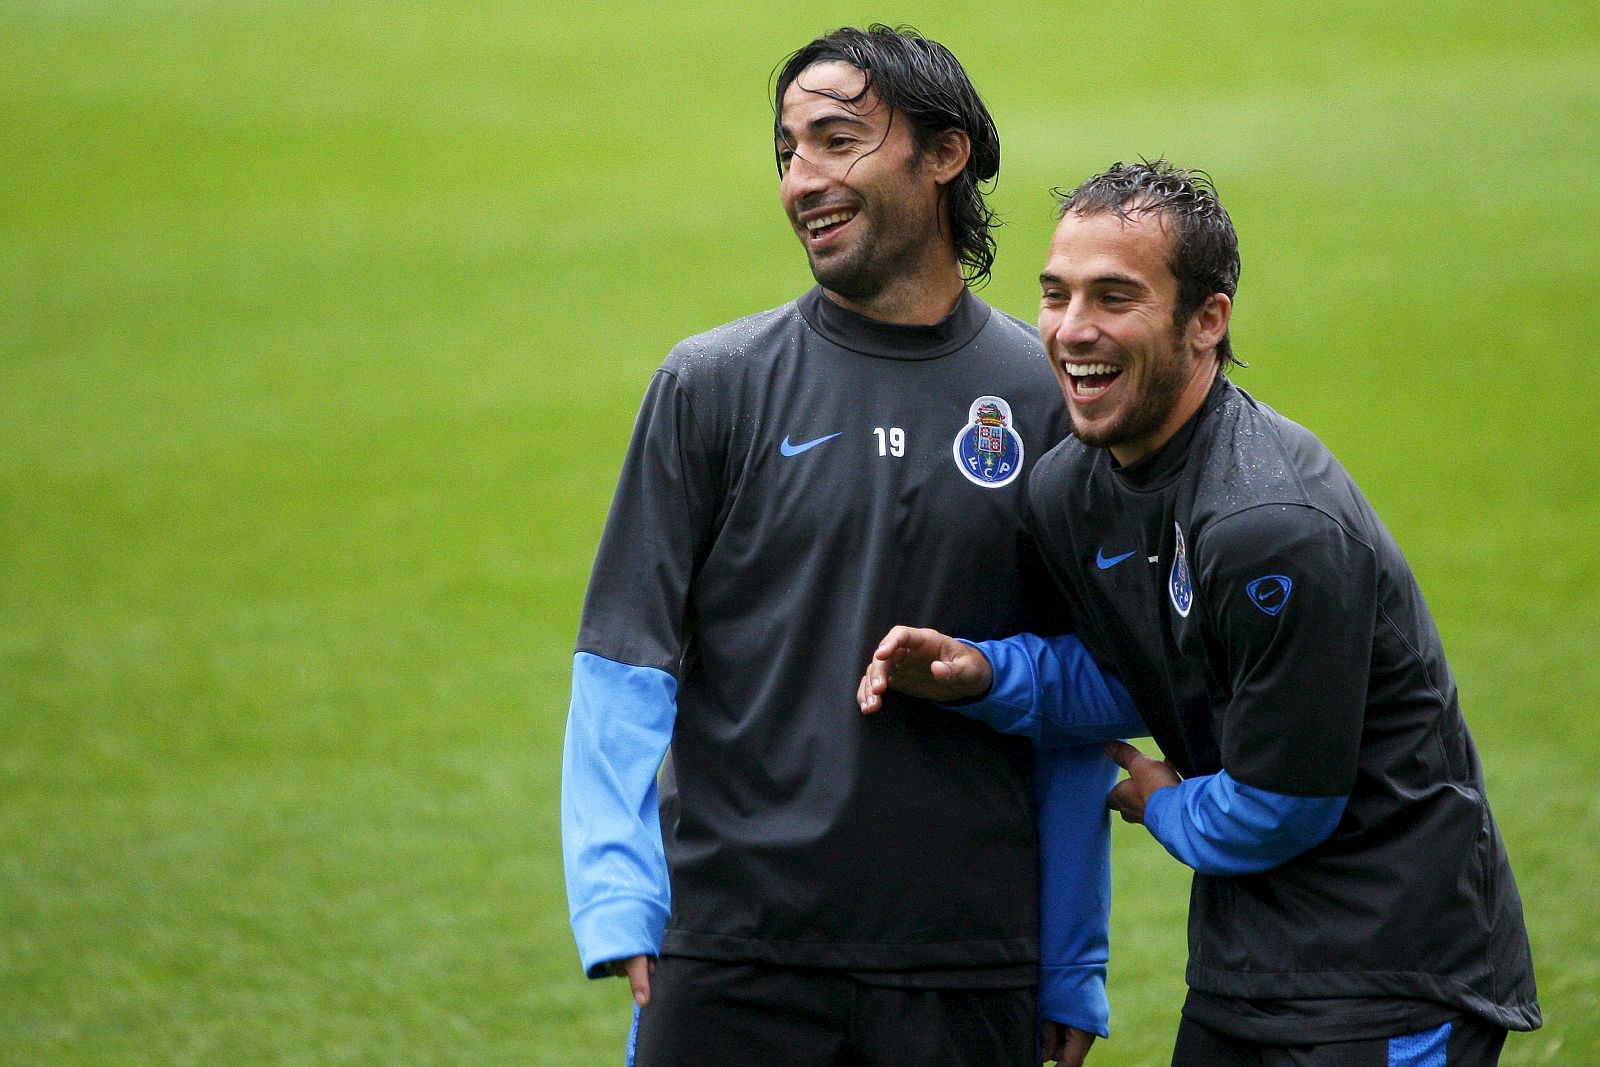 os jugadores del Oporto Farias y Belluschi bromean durante el entrenamiento del equipo.